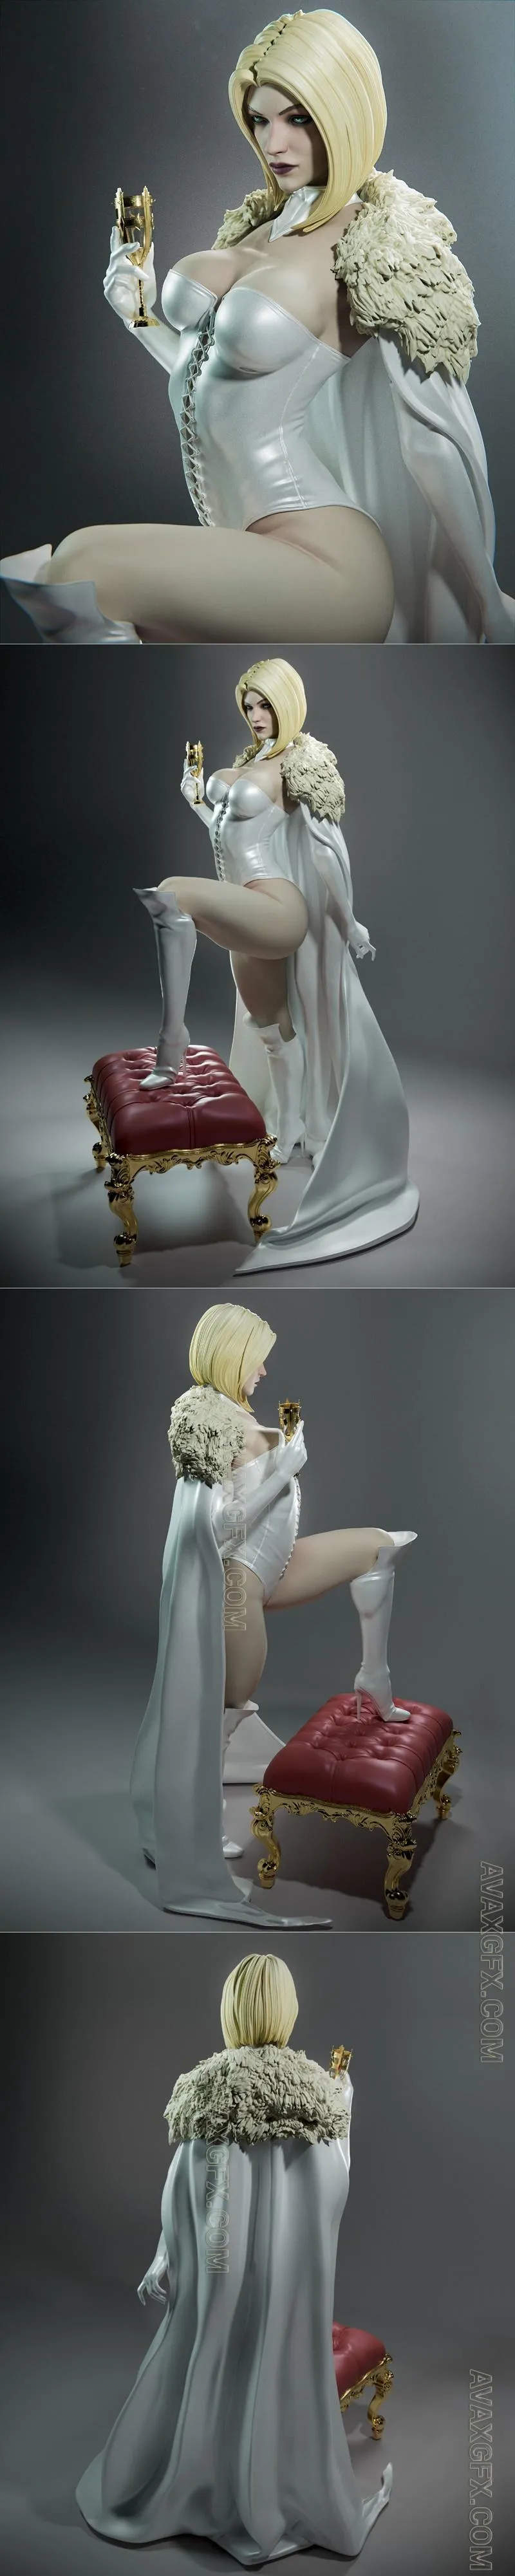 Ca 3d Studios - Emma Frost - STL 3D Model